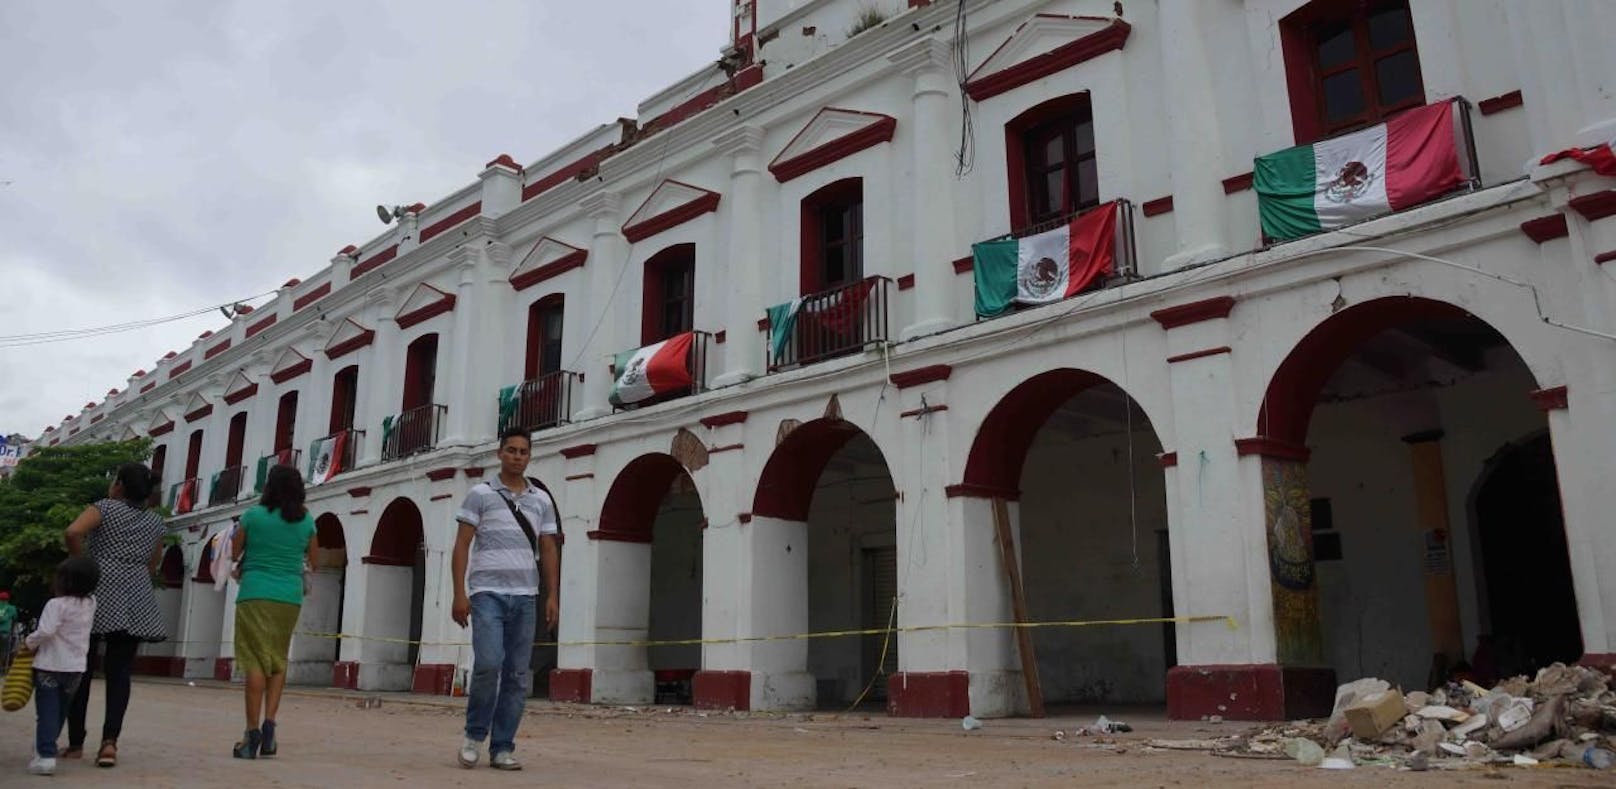 Plünderer nutzen das Chaos in Mexiko aus.